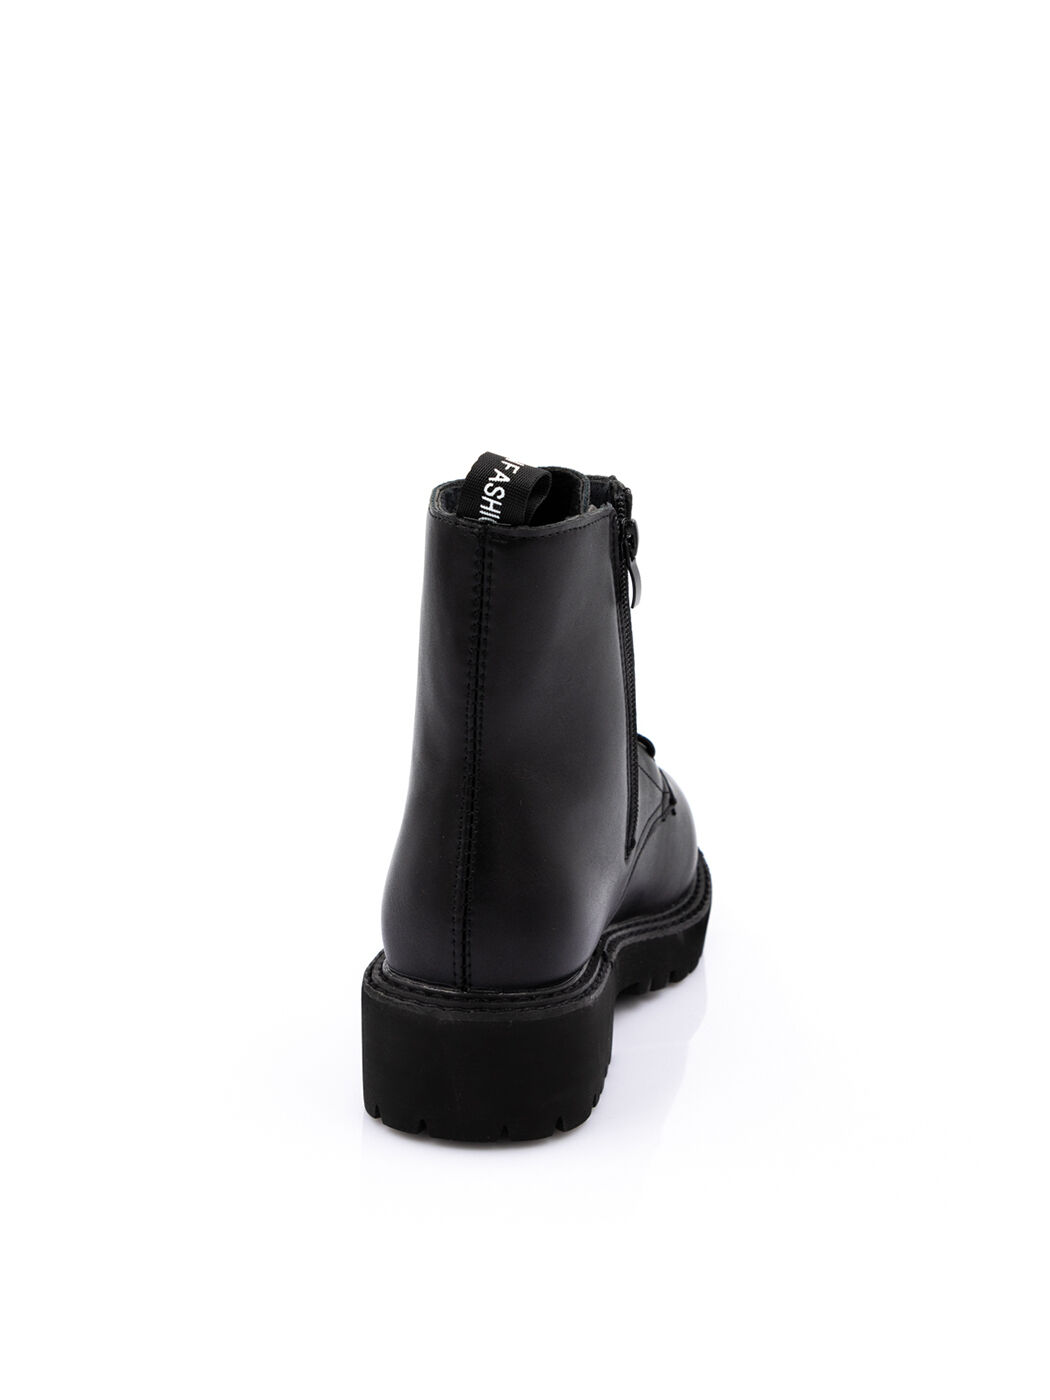 Ботинки женские черные экокожа платформа демисезон 1BM вид 2